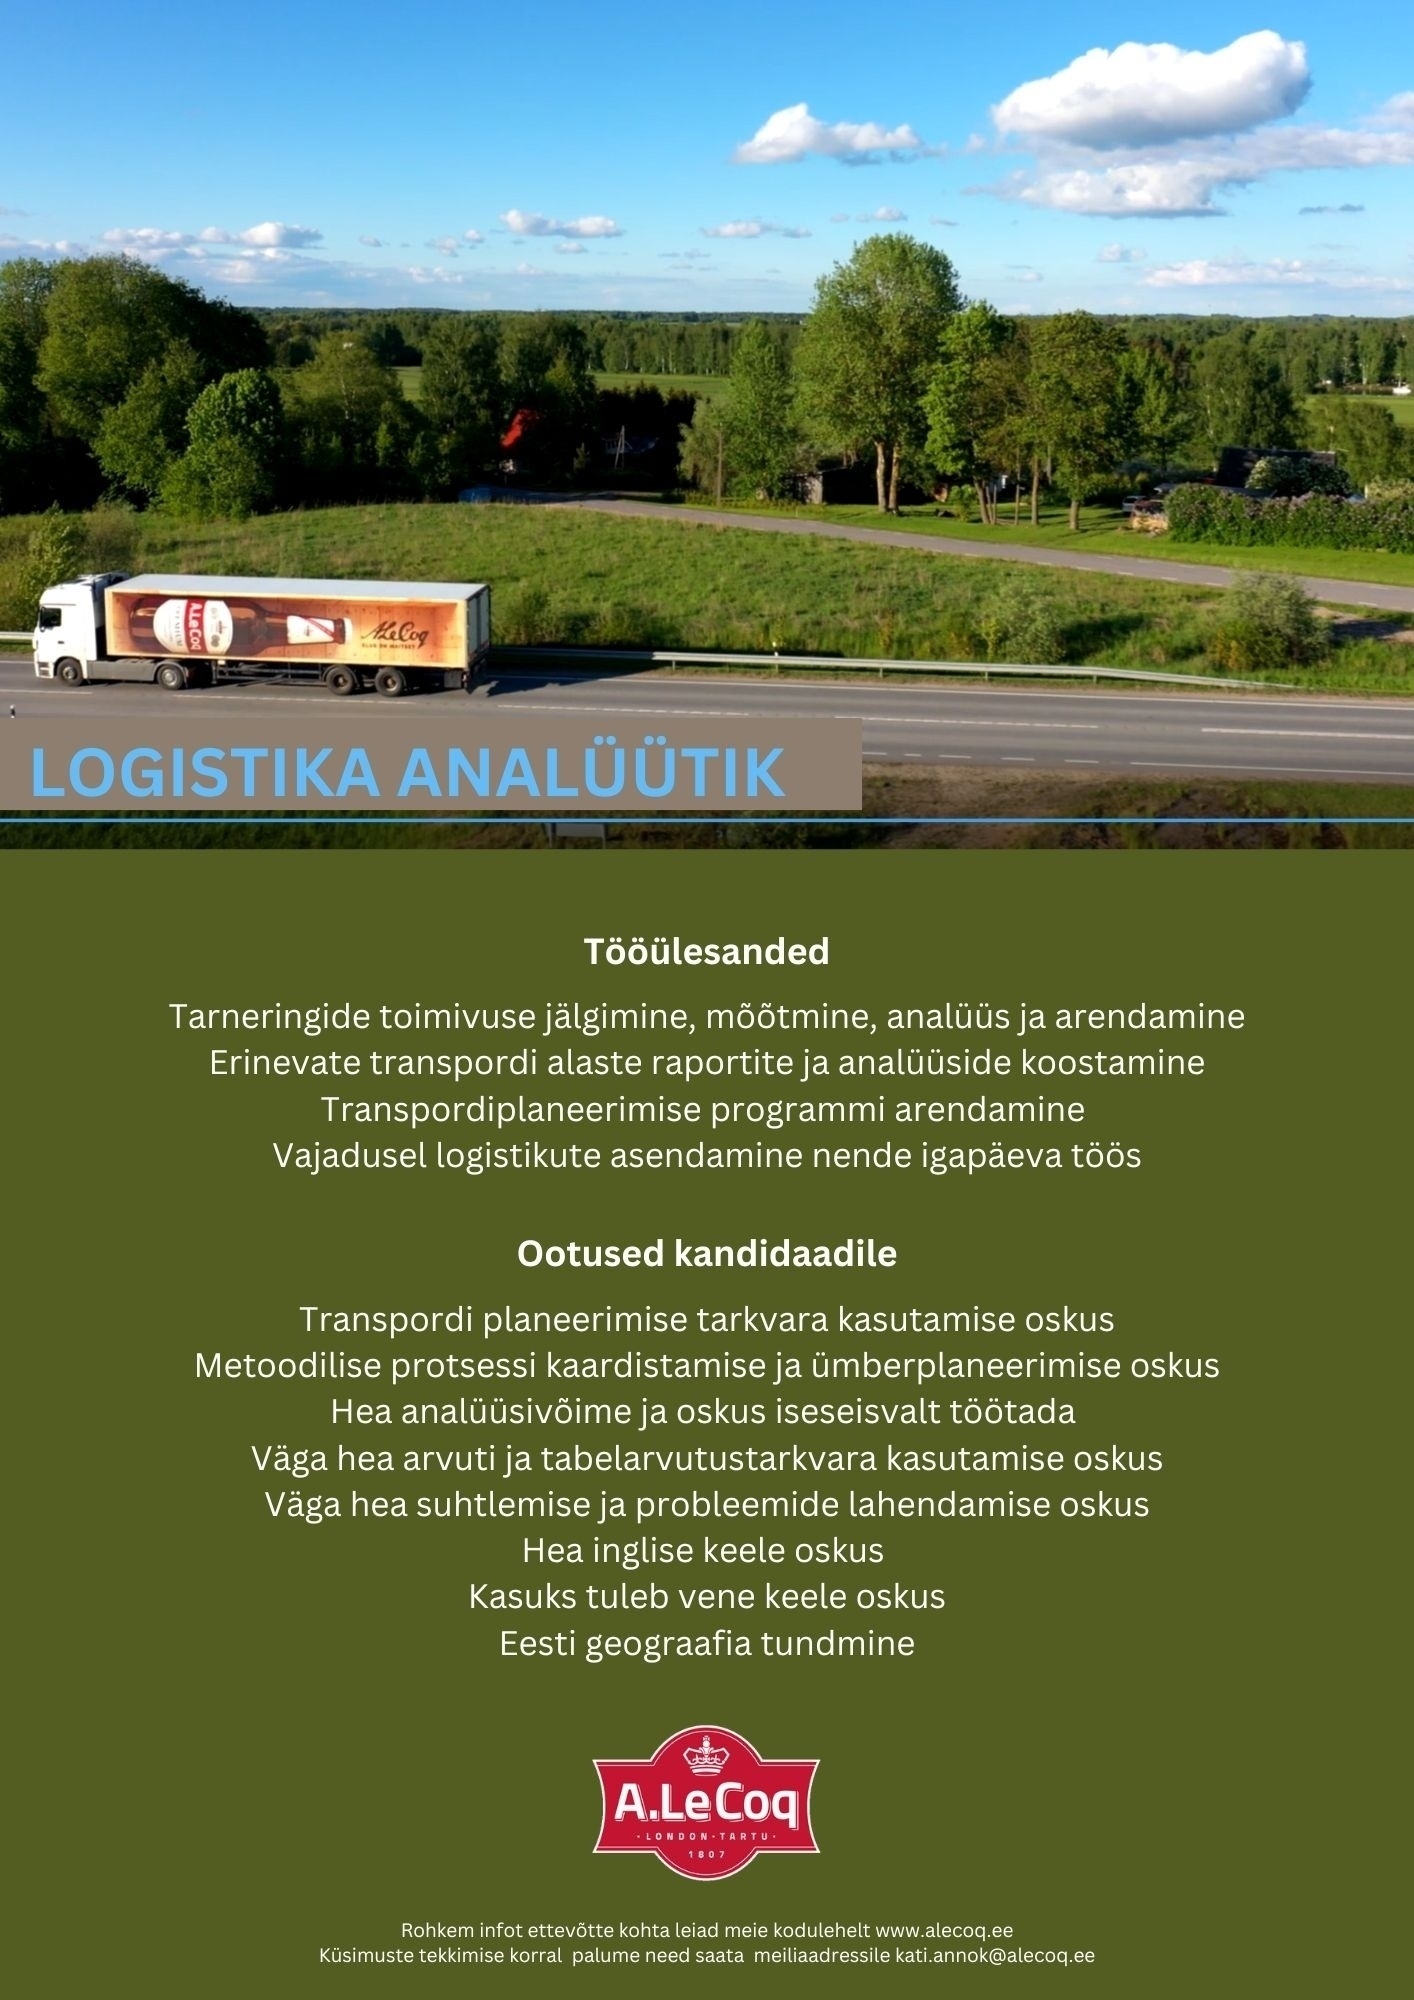 A. Le Coq AS Logistika analüütik